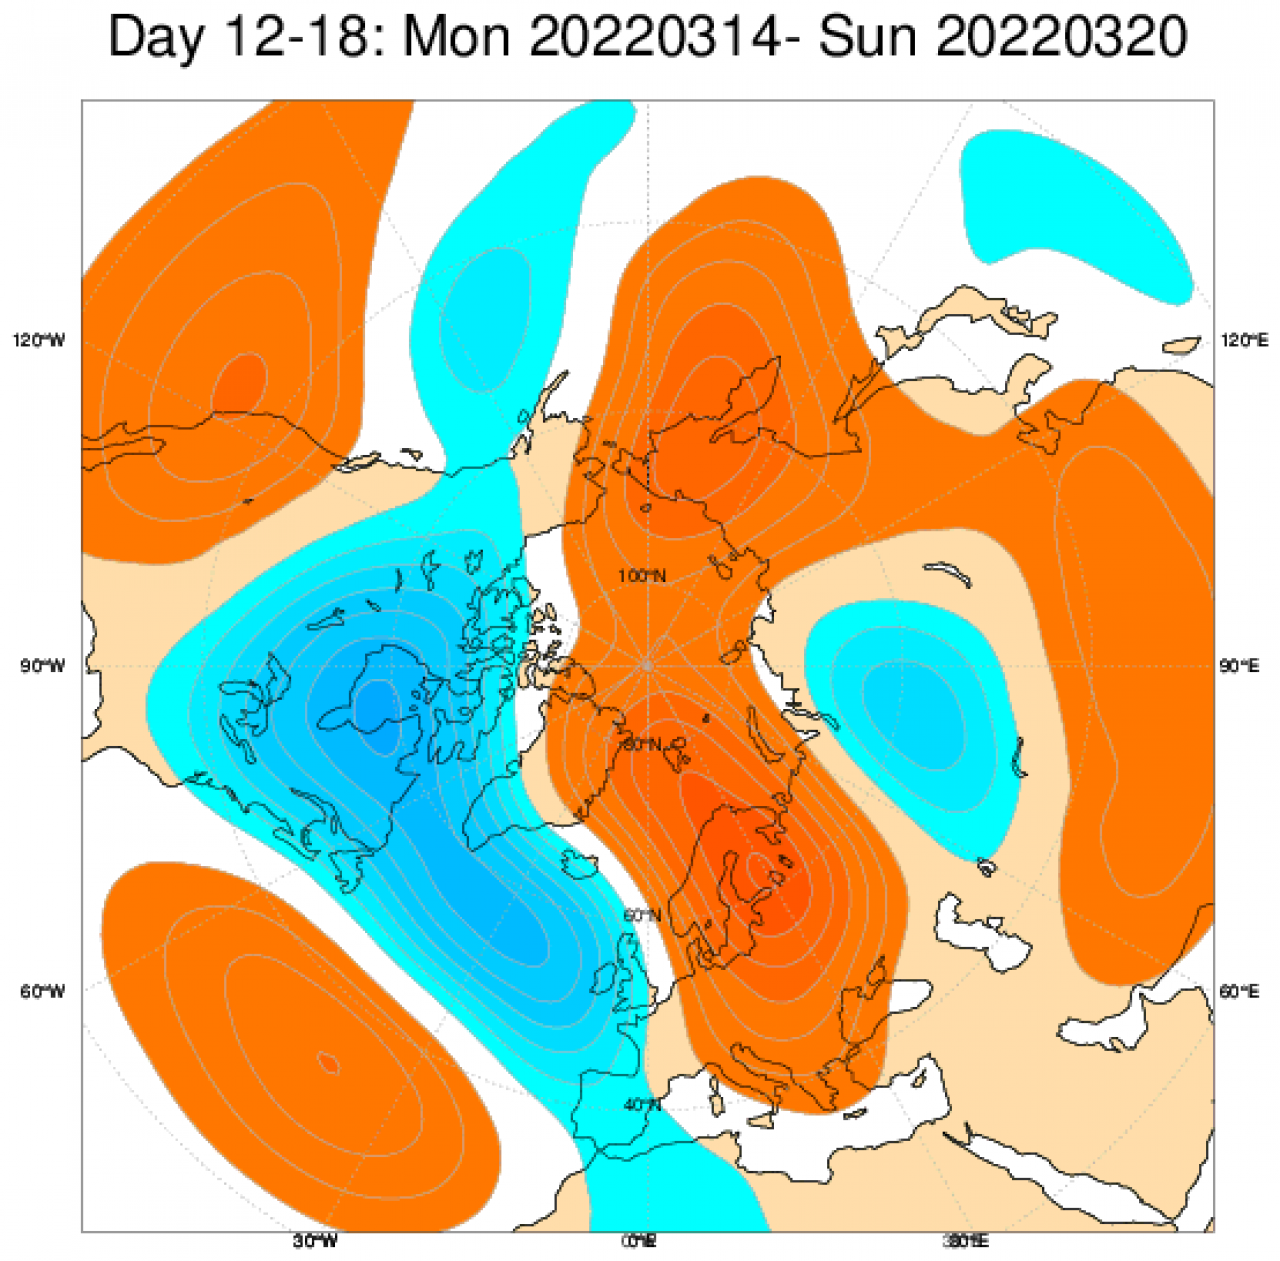 Le anomalie di geopotenziale in Europa secondo il modello ECMWF, mediate nel periodo 14-20 marzo